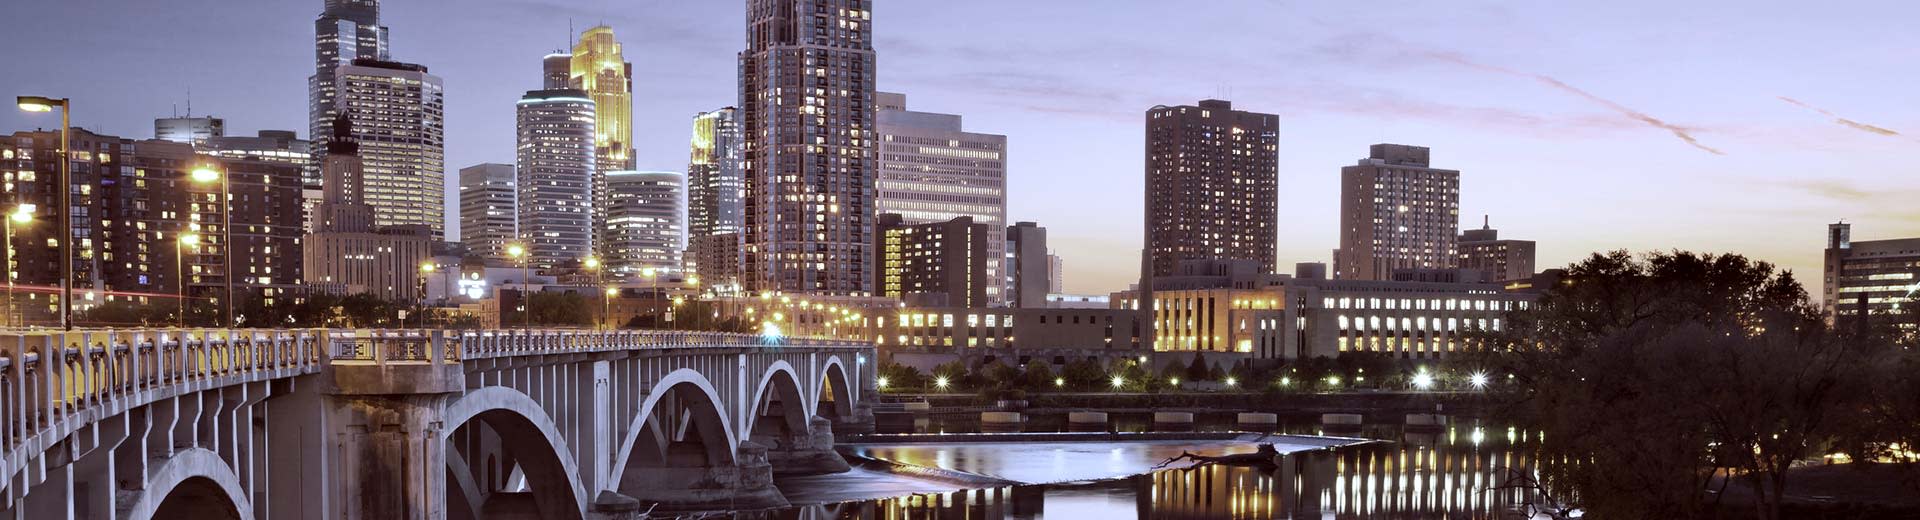 橋と高層ビルがミネアポリスの空を照らす。